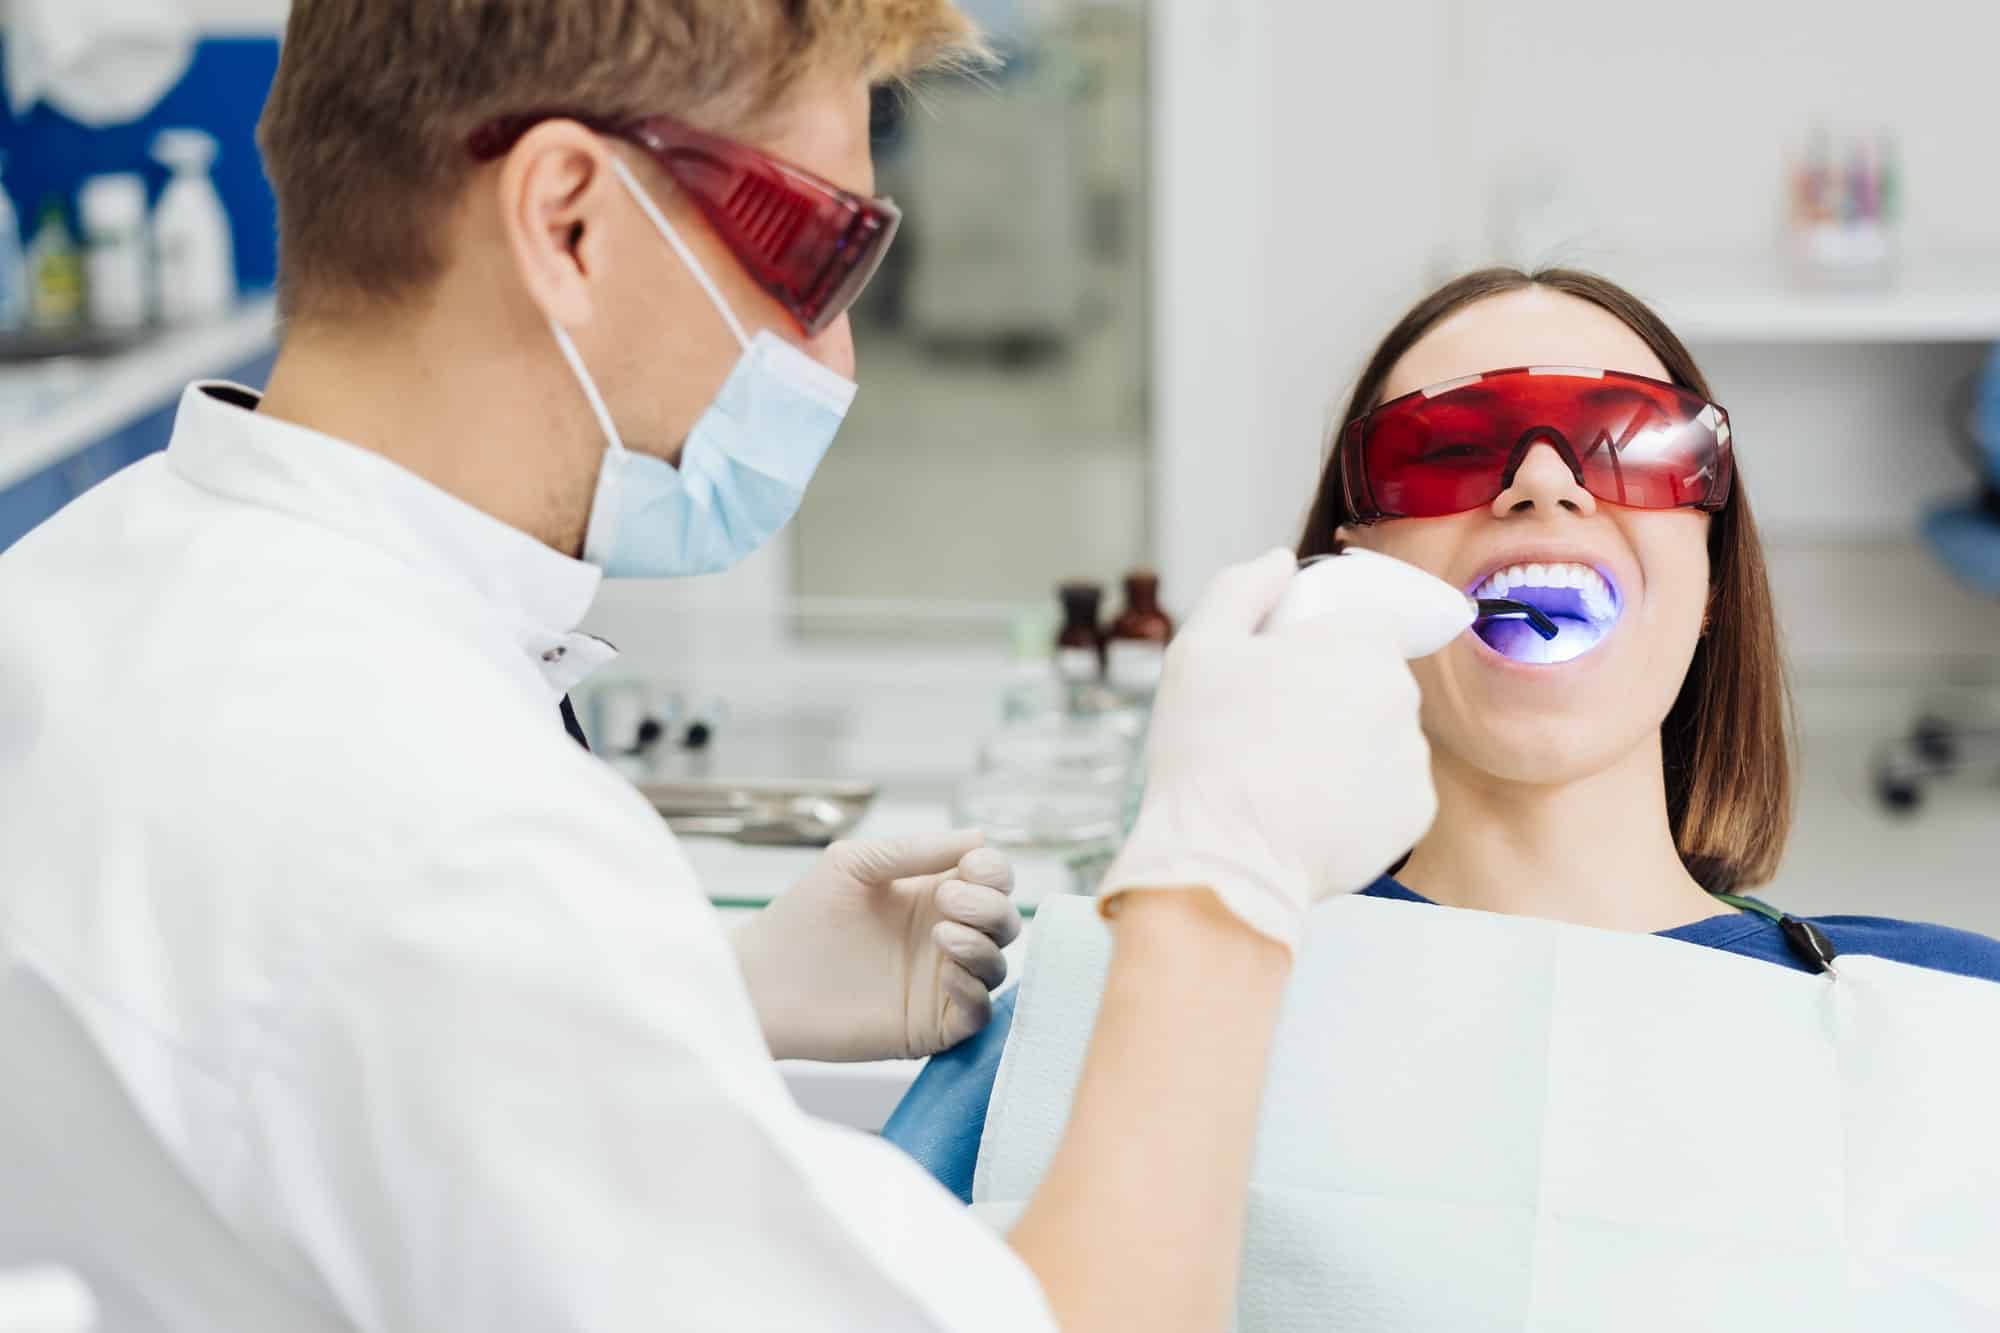 Blanchiment dentaire : Quand faut-il consulter un professionnel ?